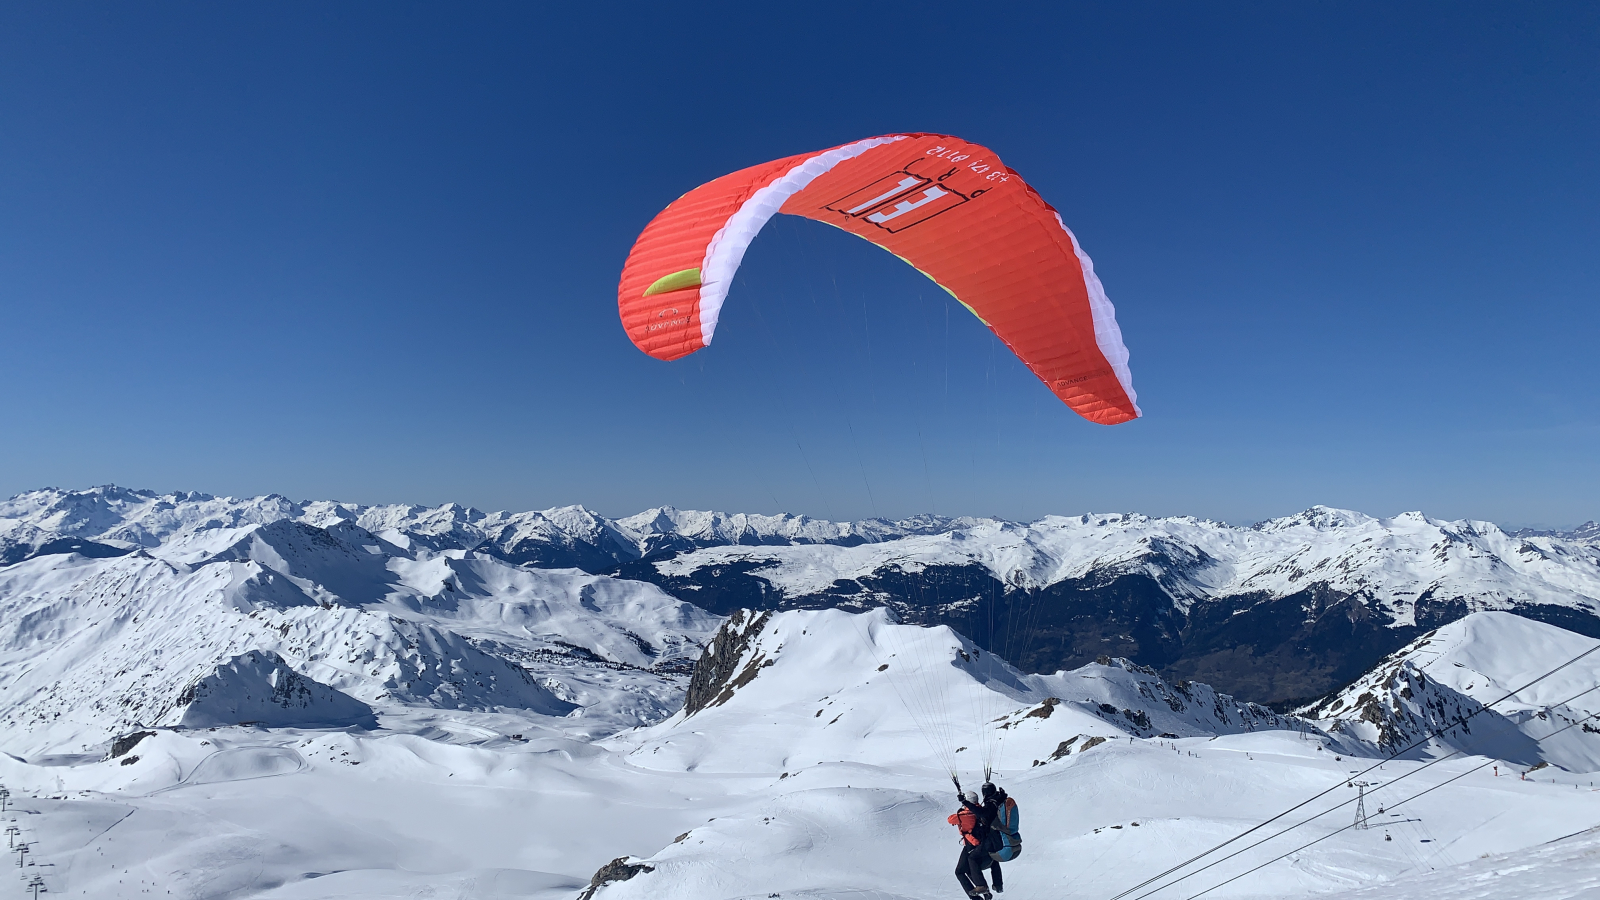 El Pro paragliding